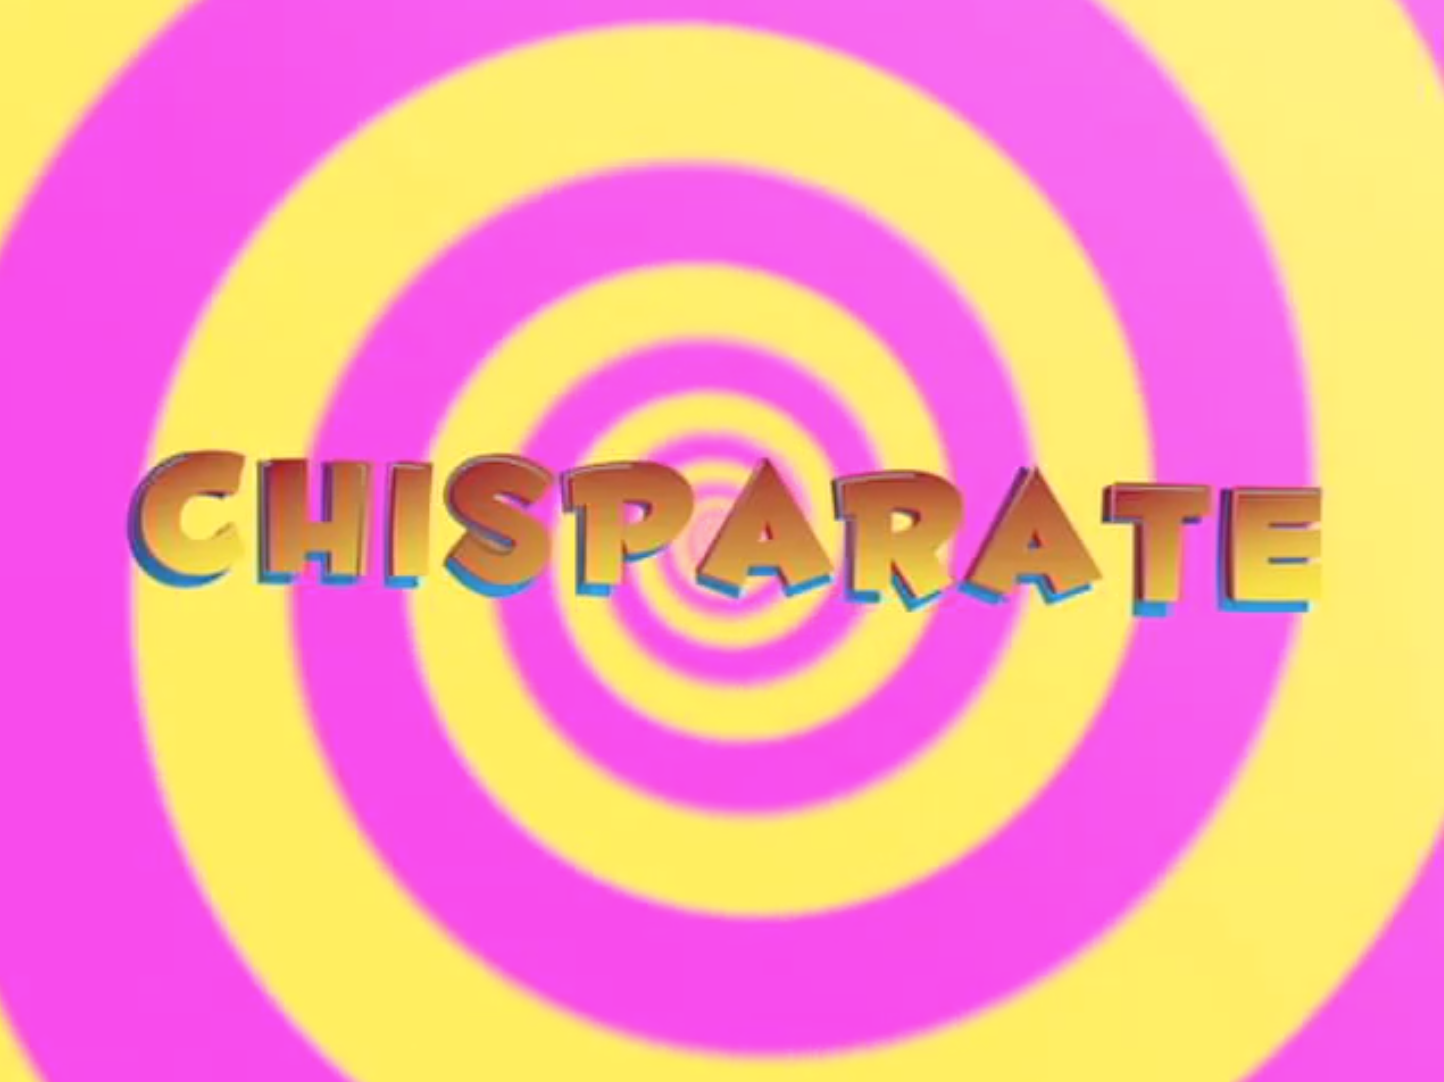 CHISPARATE